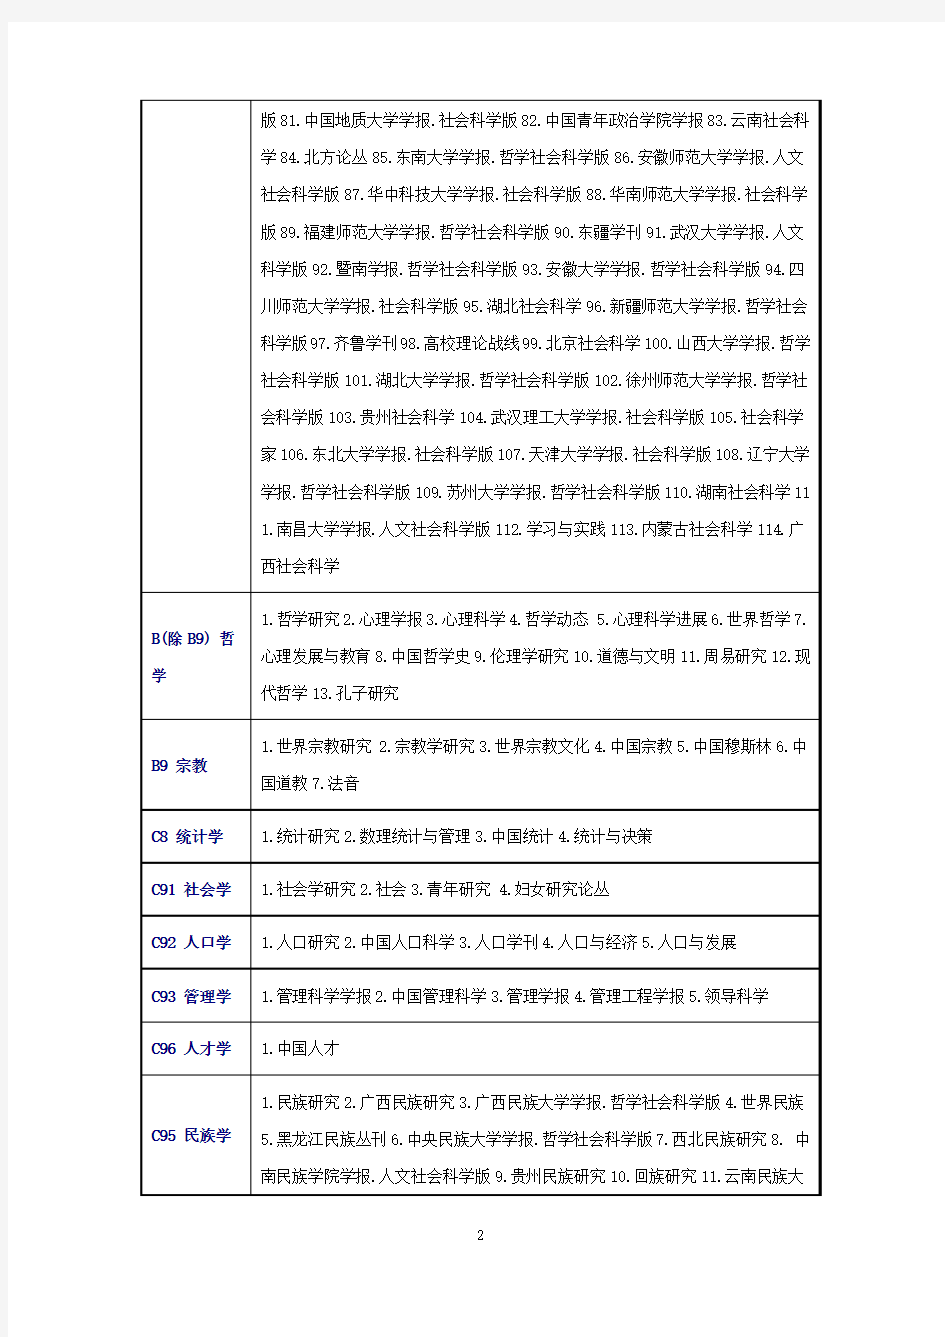 北大2014年版《中文核心期刊要目总览》